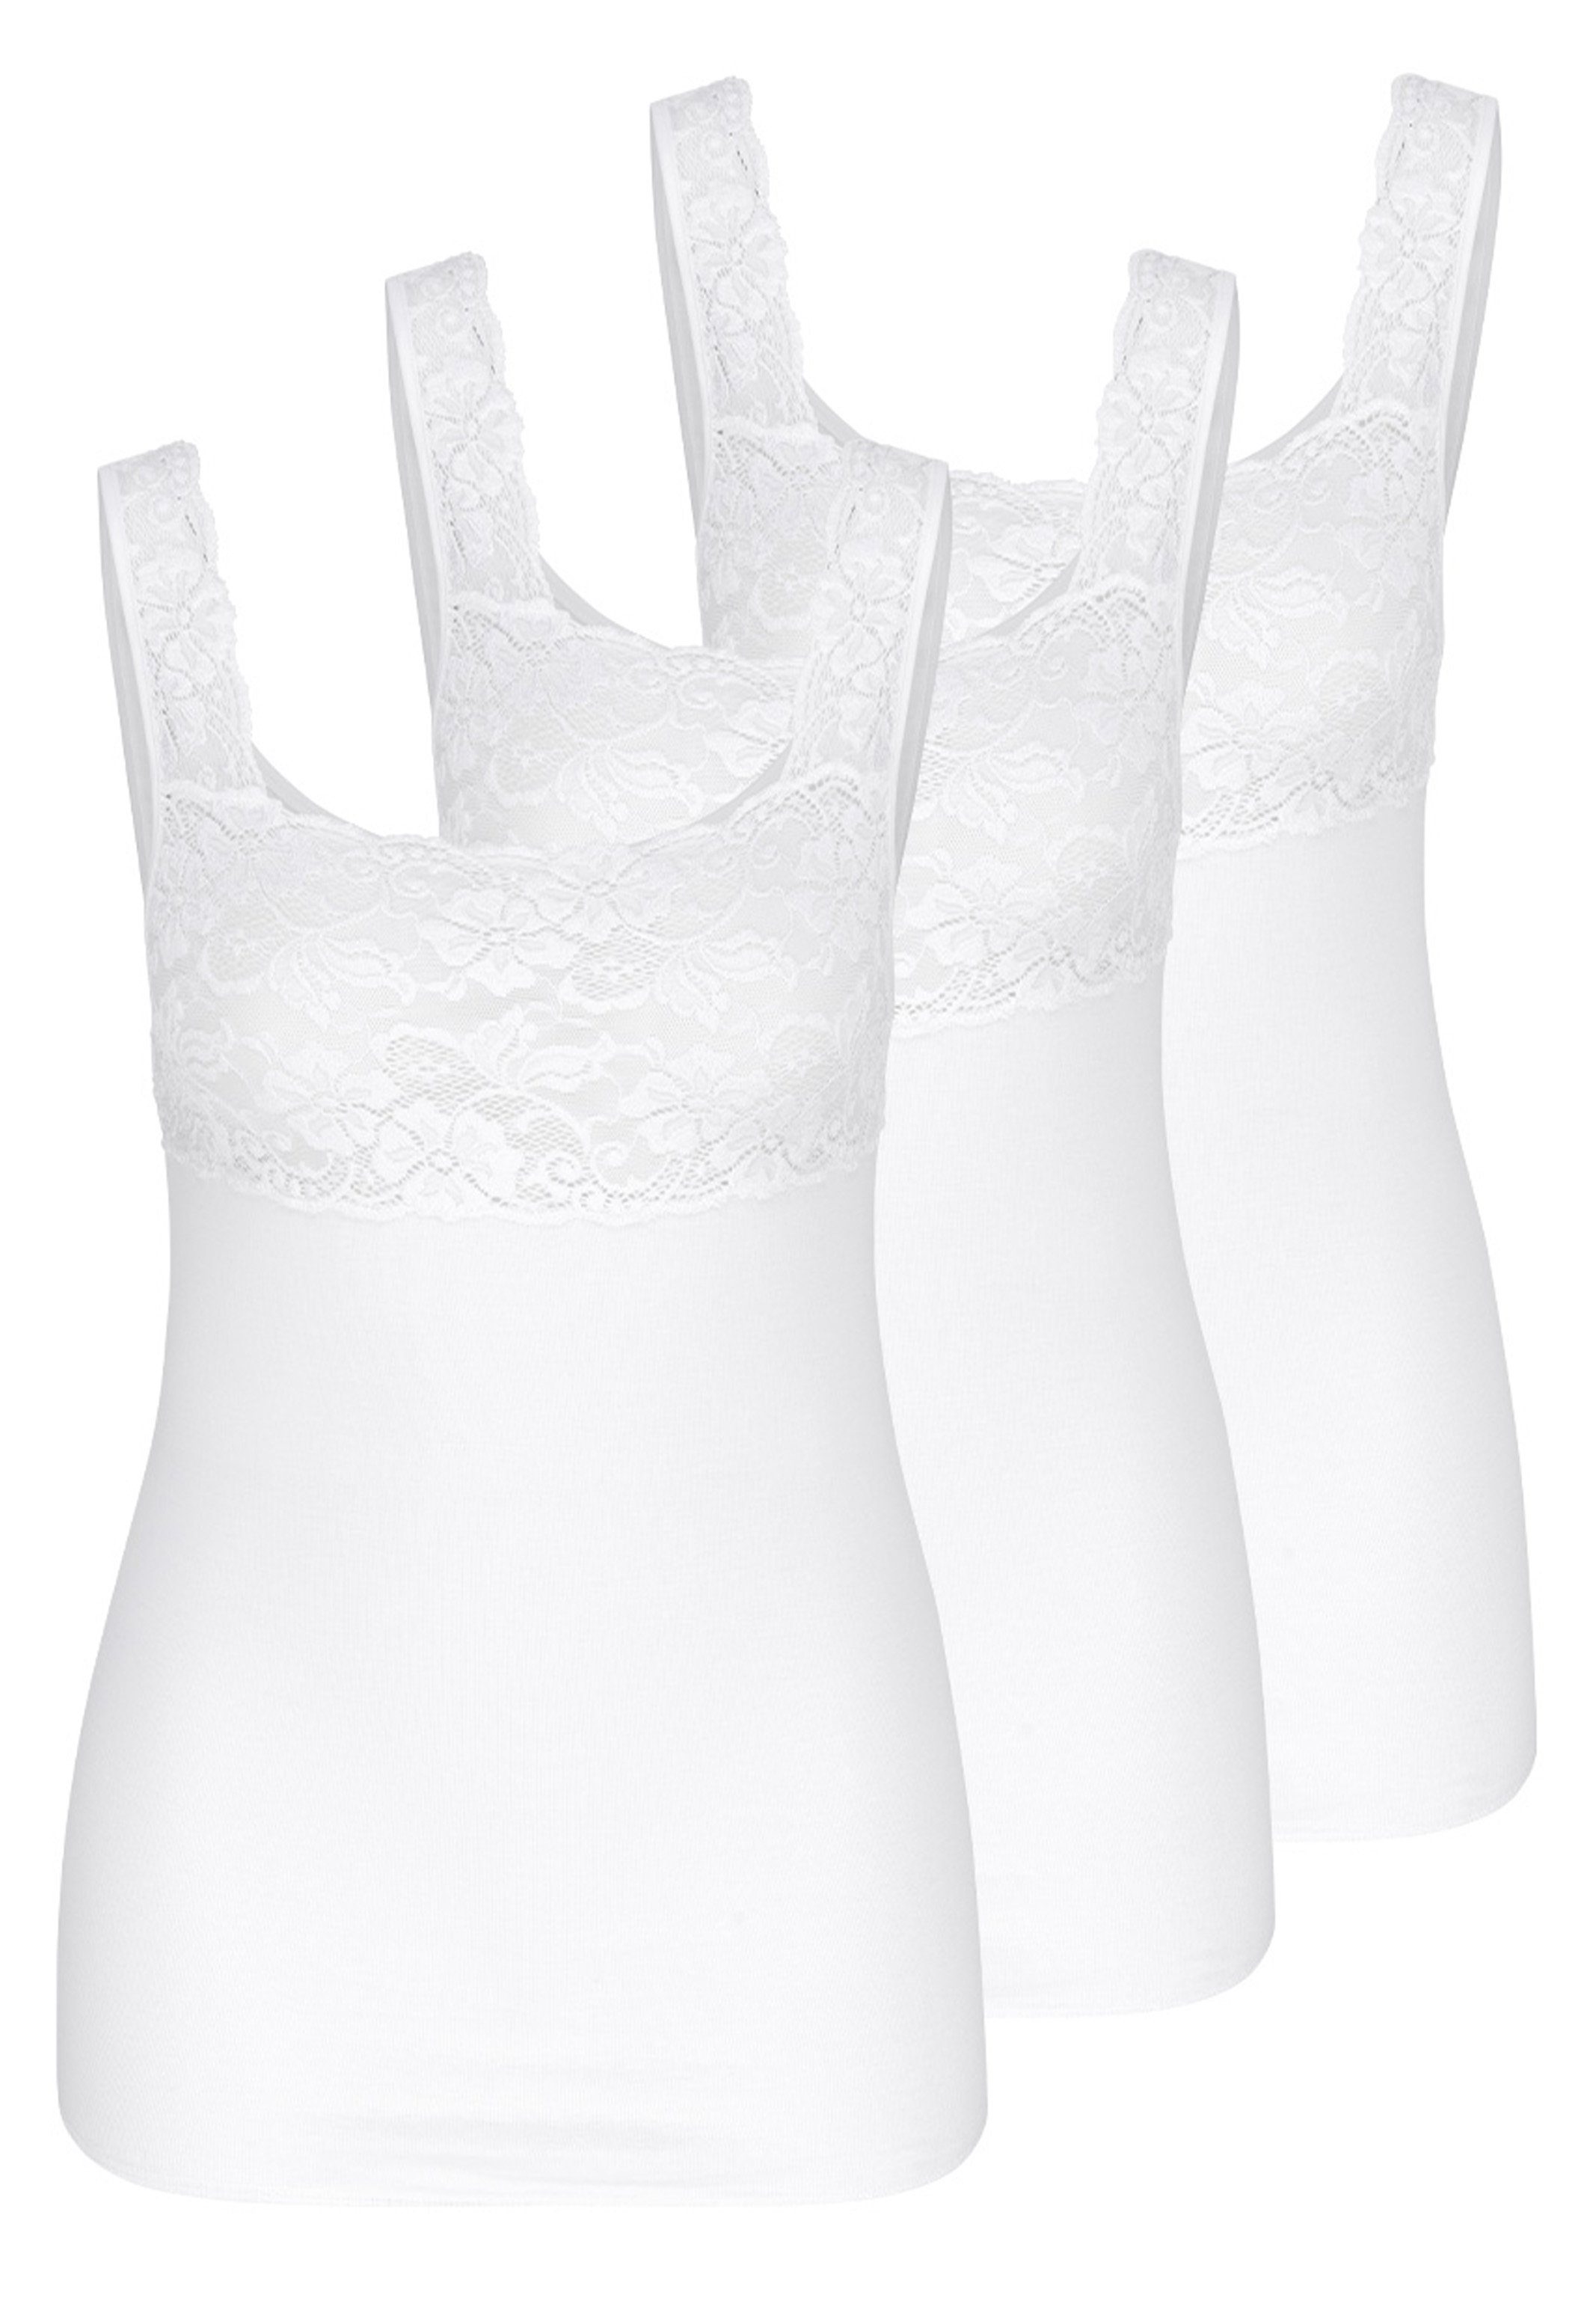 Nina Von C. Unterhemd 3er Pack Fine Cotton (Spar-Set, 3-St) Unterhemd / Top - Baumwolle - Atmungsaktiv - Mit Spitzen-Details Weiß